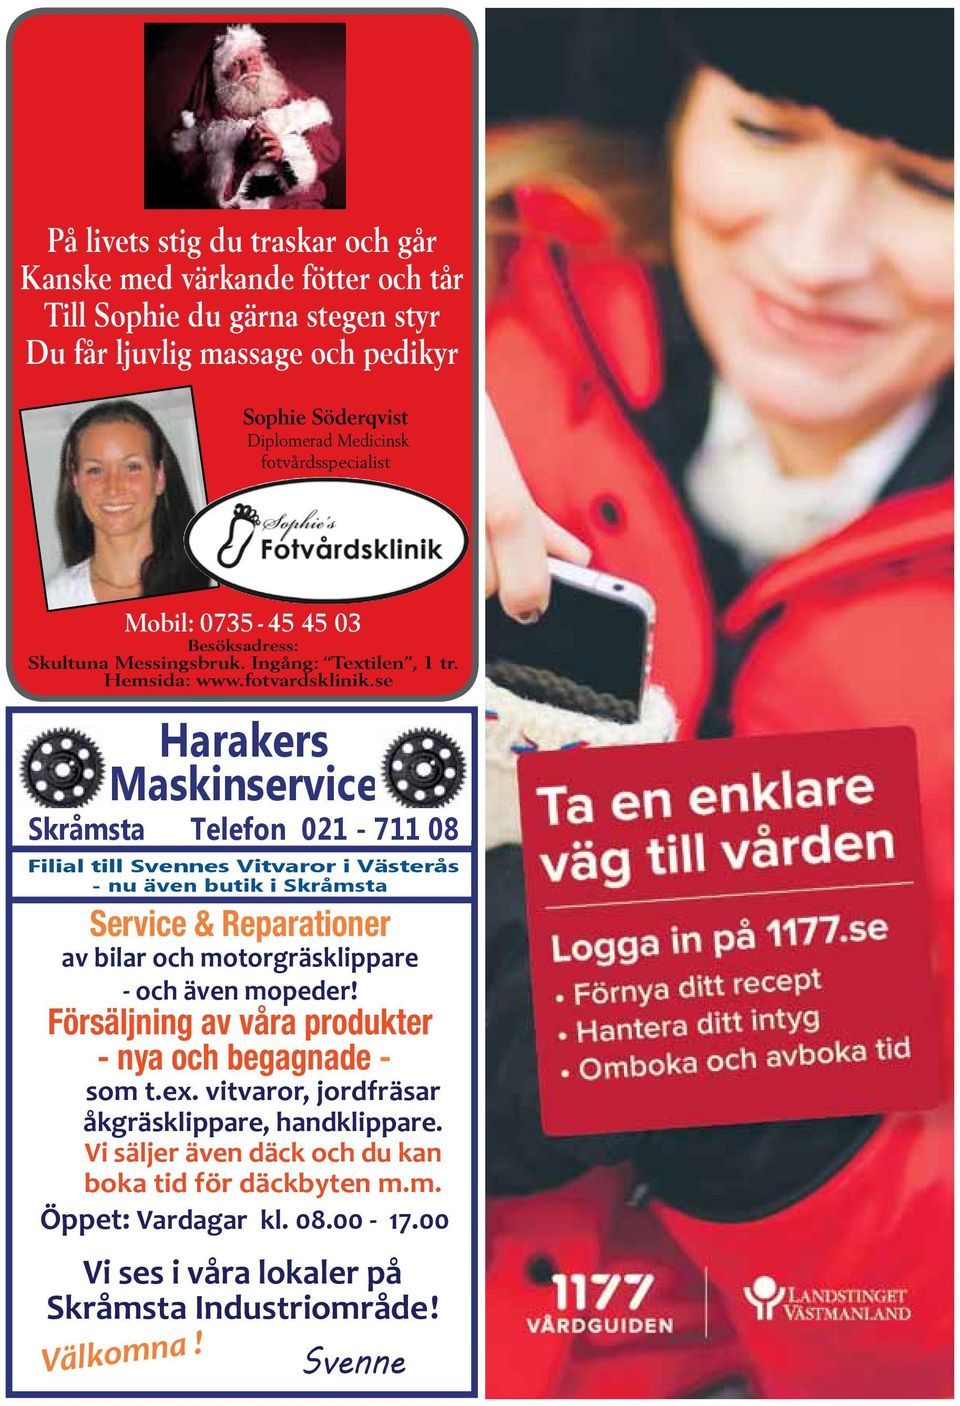 se Harakers Maskinservice Skråmsta Telefon 021-711 08 Filial till Svennes Vitvaror i Västerås - nu även butik i Skråmsta Service & Reparationer av bilar och motorgräsklippare - och även